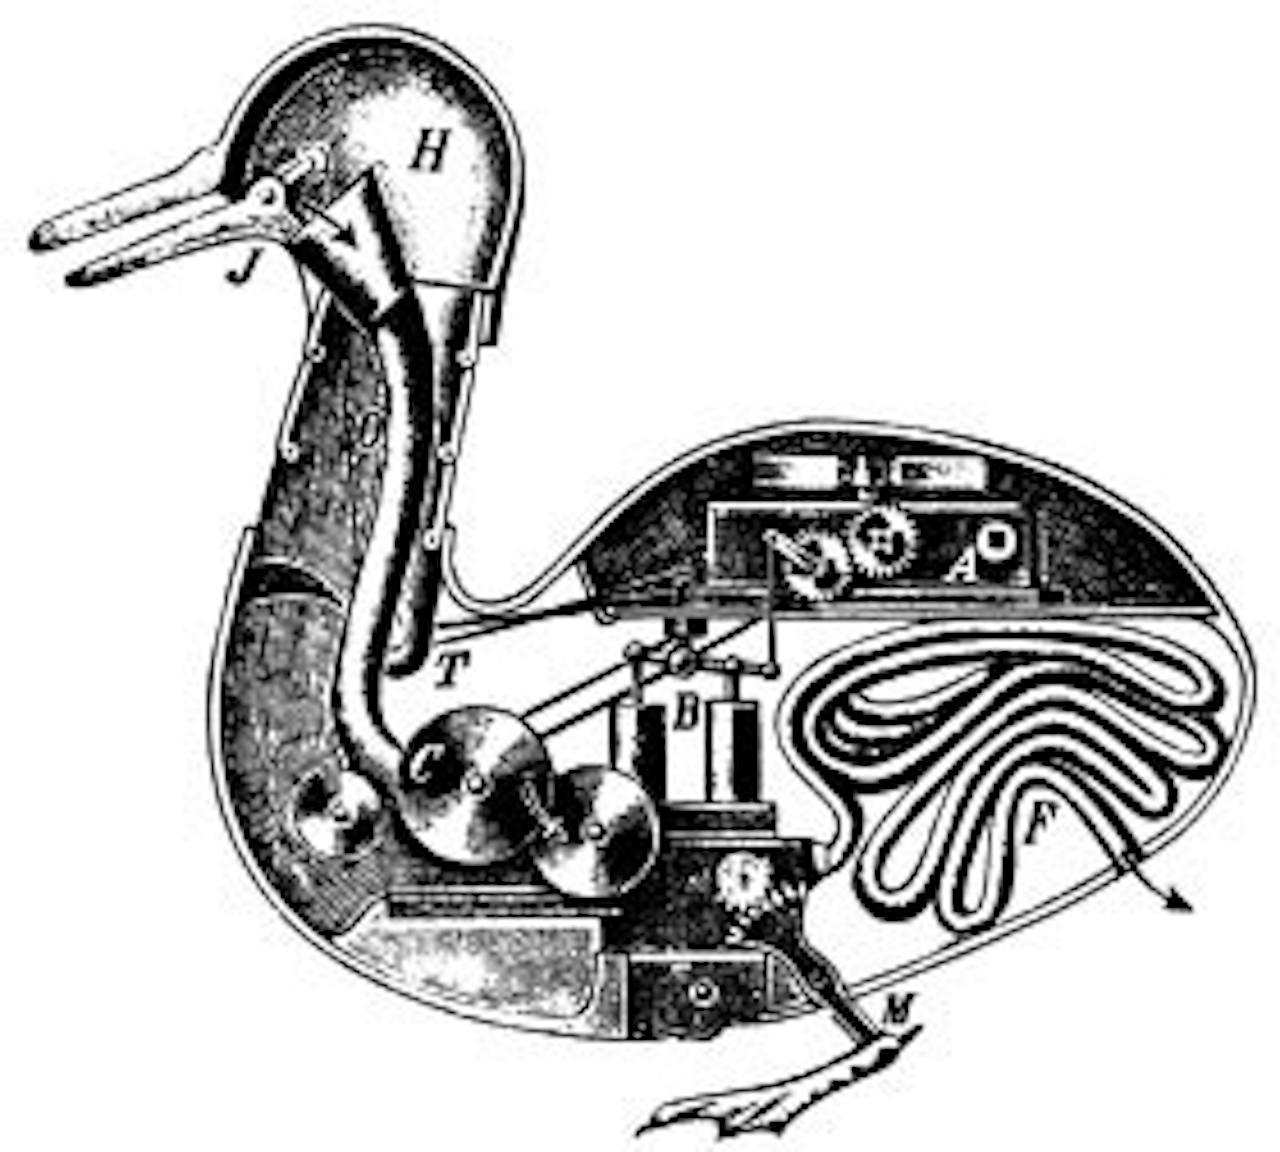 Een oude tekening van een eend met zichtbare techniek in het lichaam.